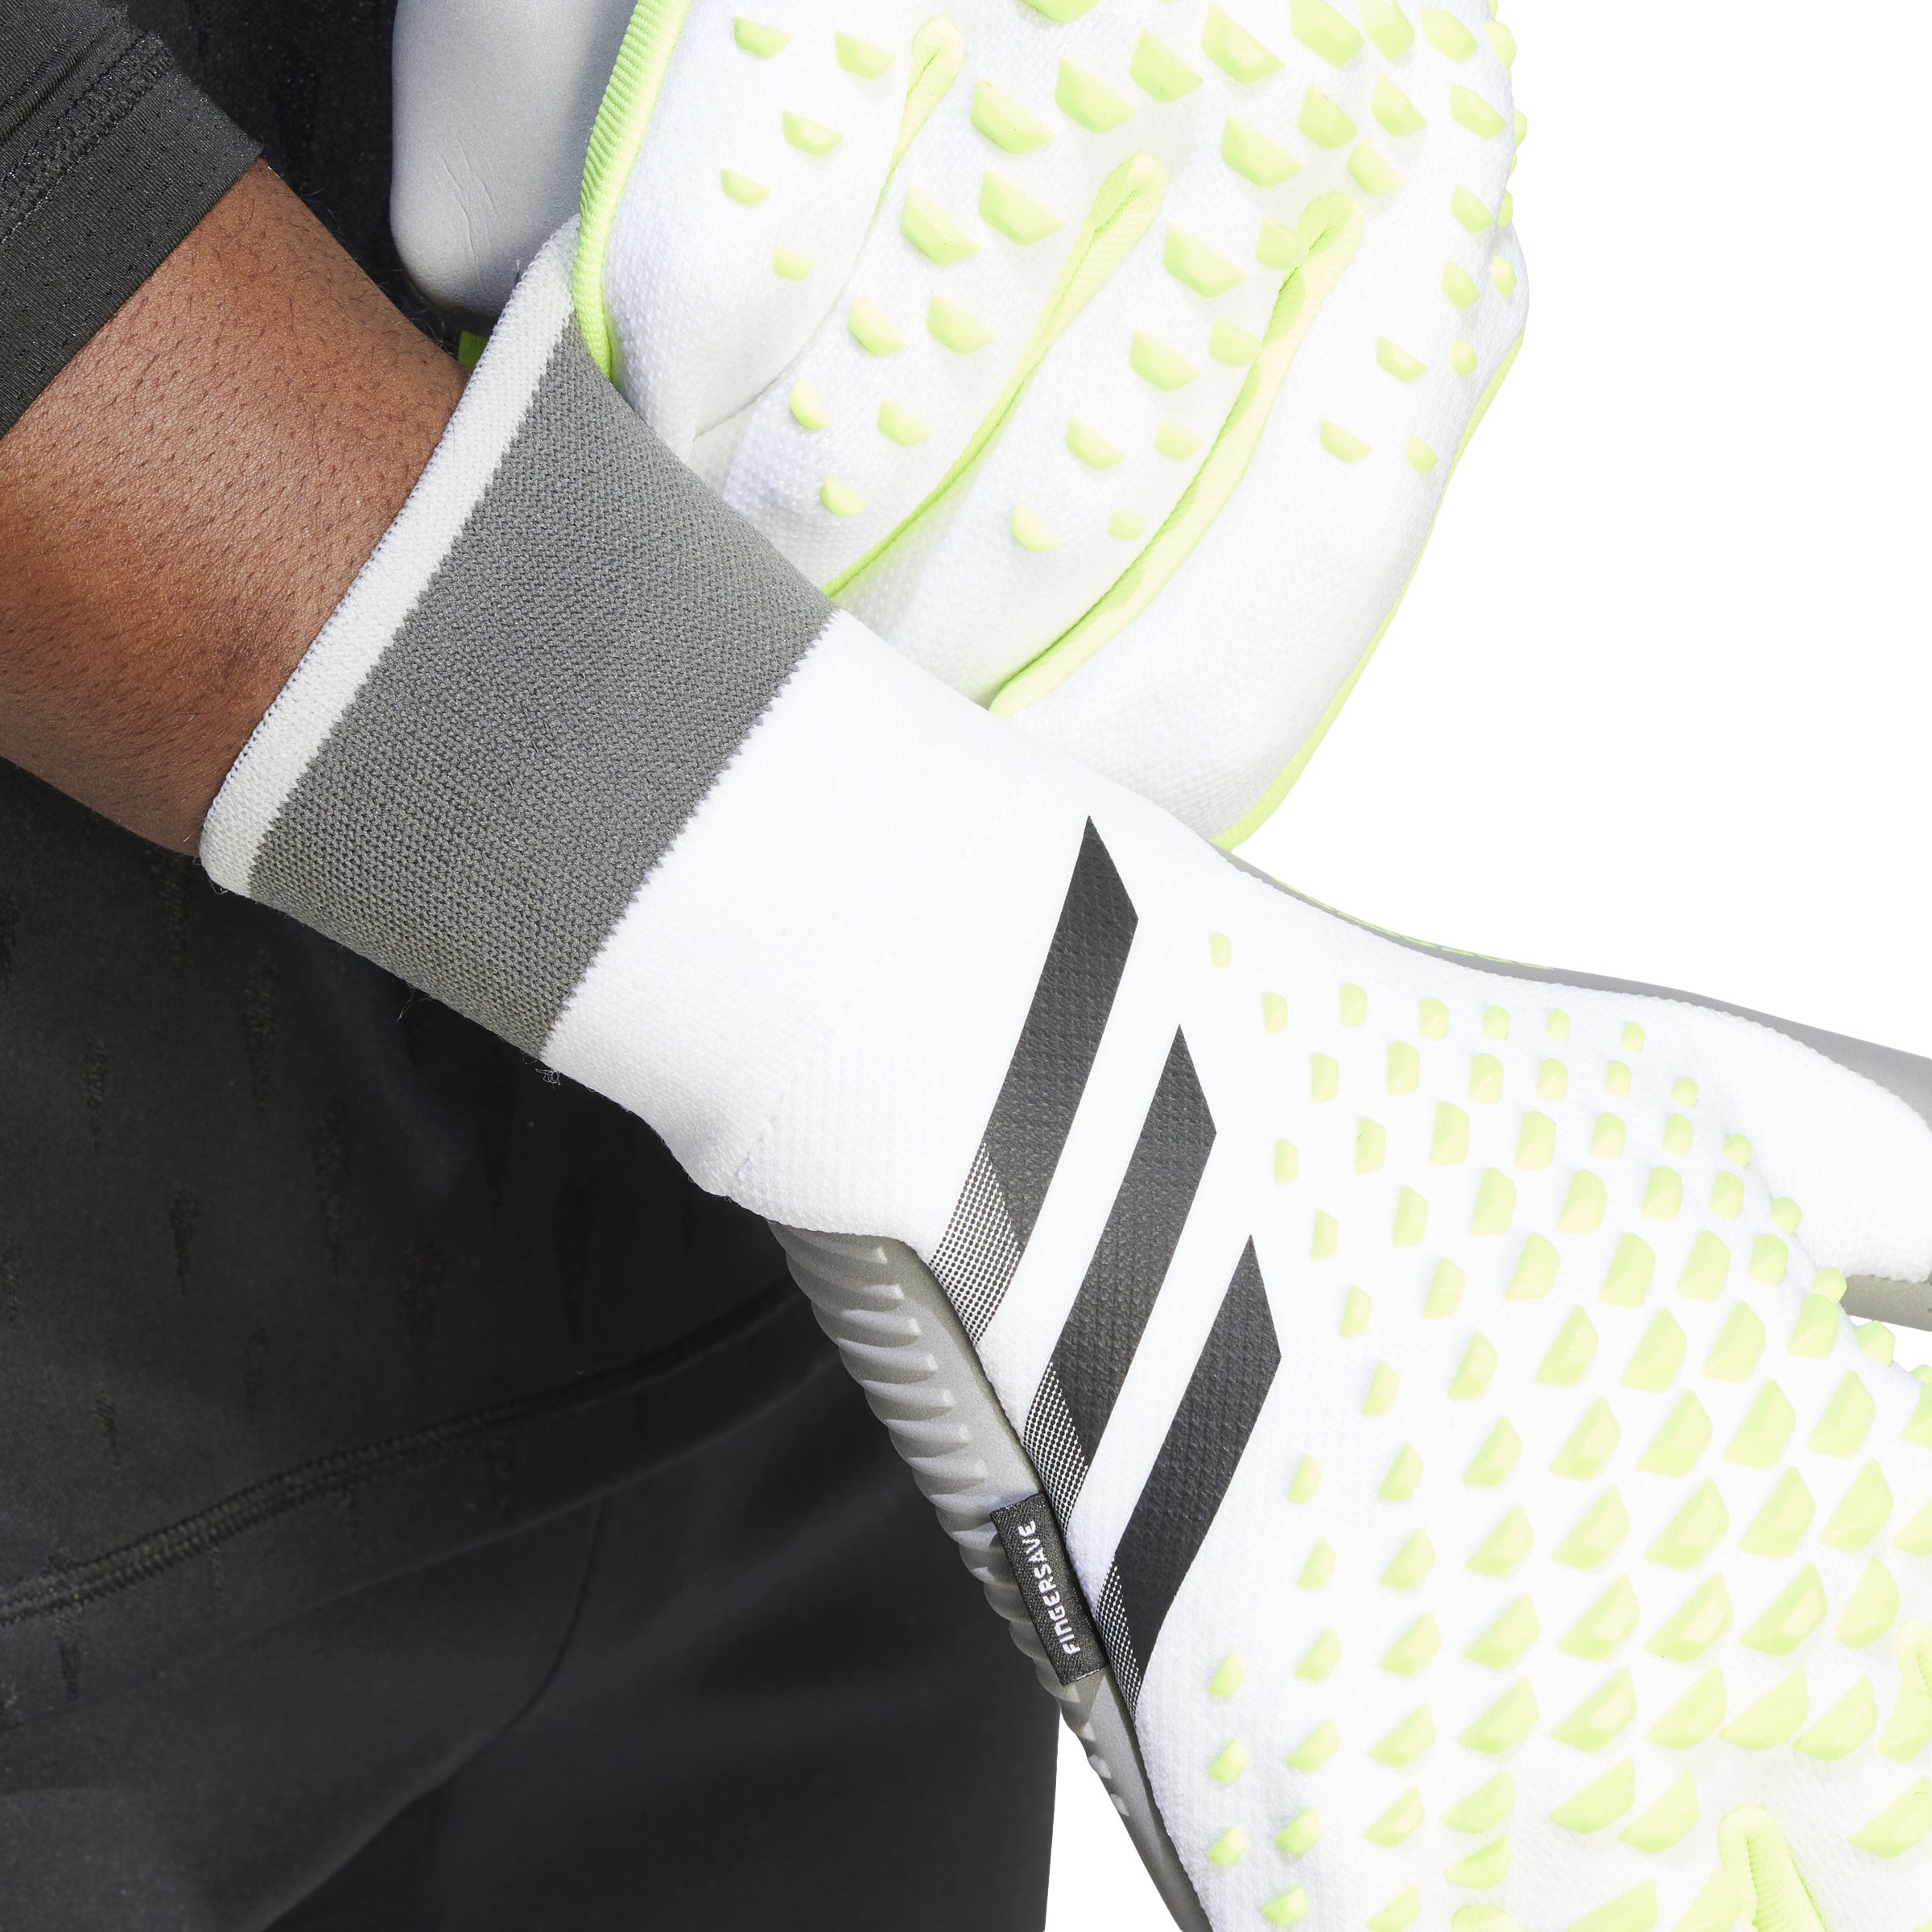 Adidas Predator Match Fingersave Youth Goalkeeper Gloves, White/Lucid Lemon/Black / 7